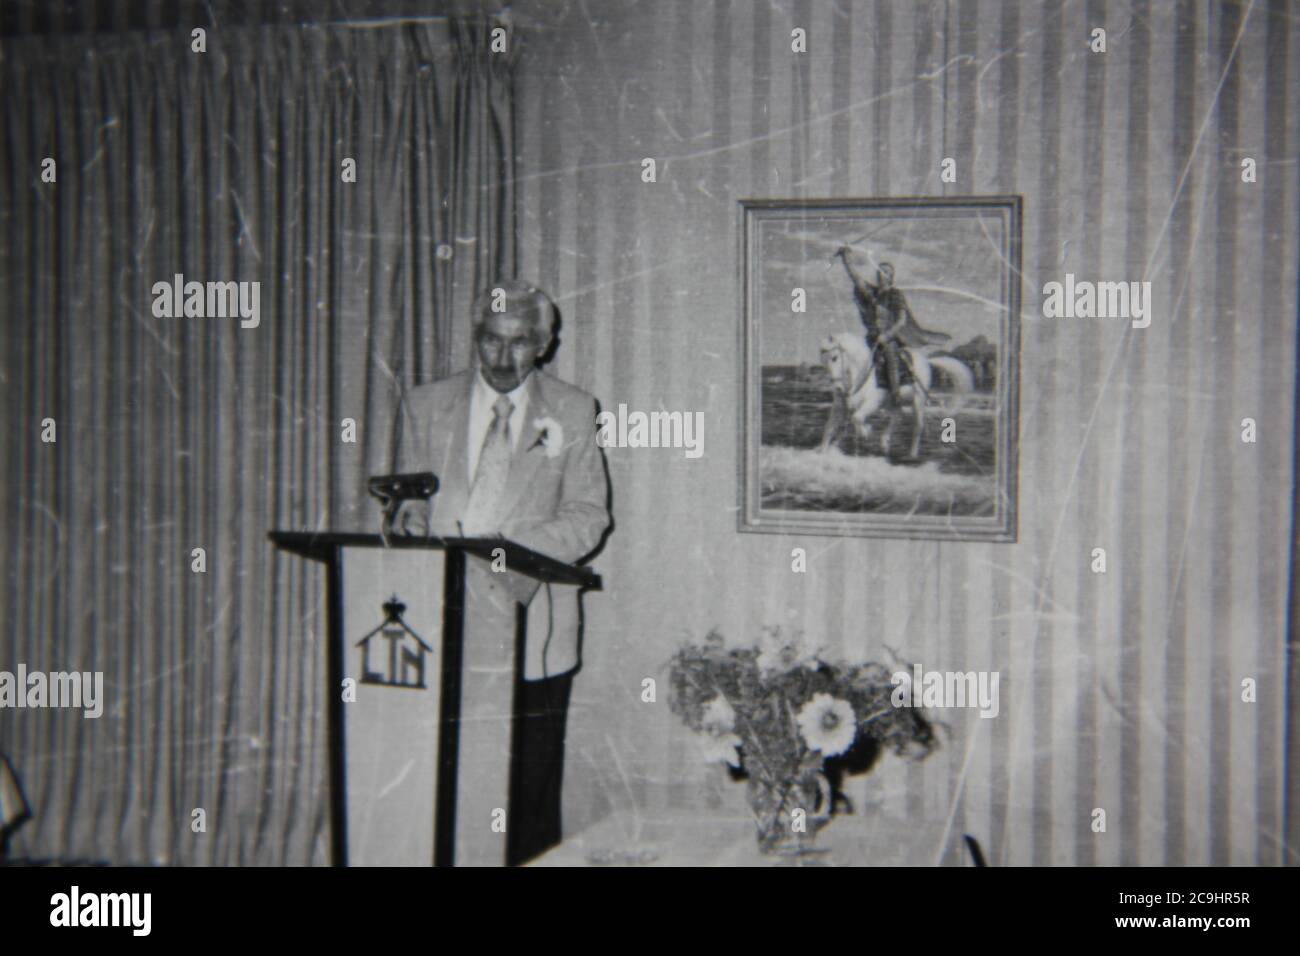 Feine Vintage-Schwarz-Weiß-Fotografie eines erwachsenen Sprechers aus den 1970er Jahren, der auf dem Podium referiert. Stockfoto